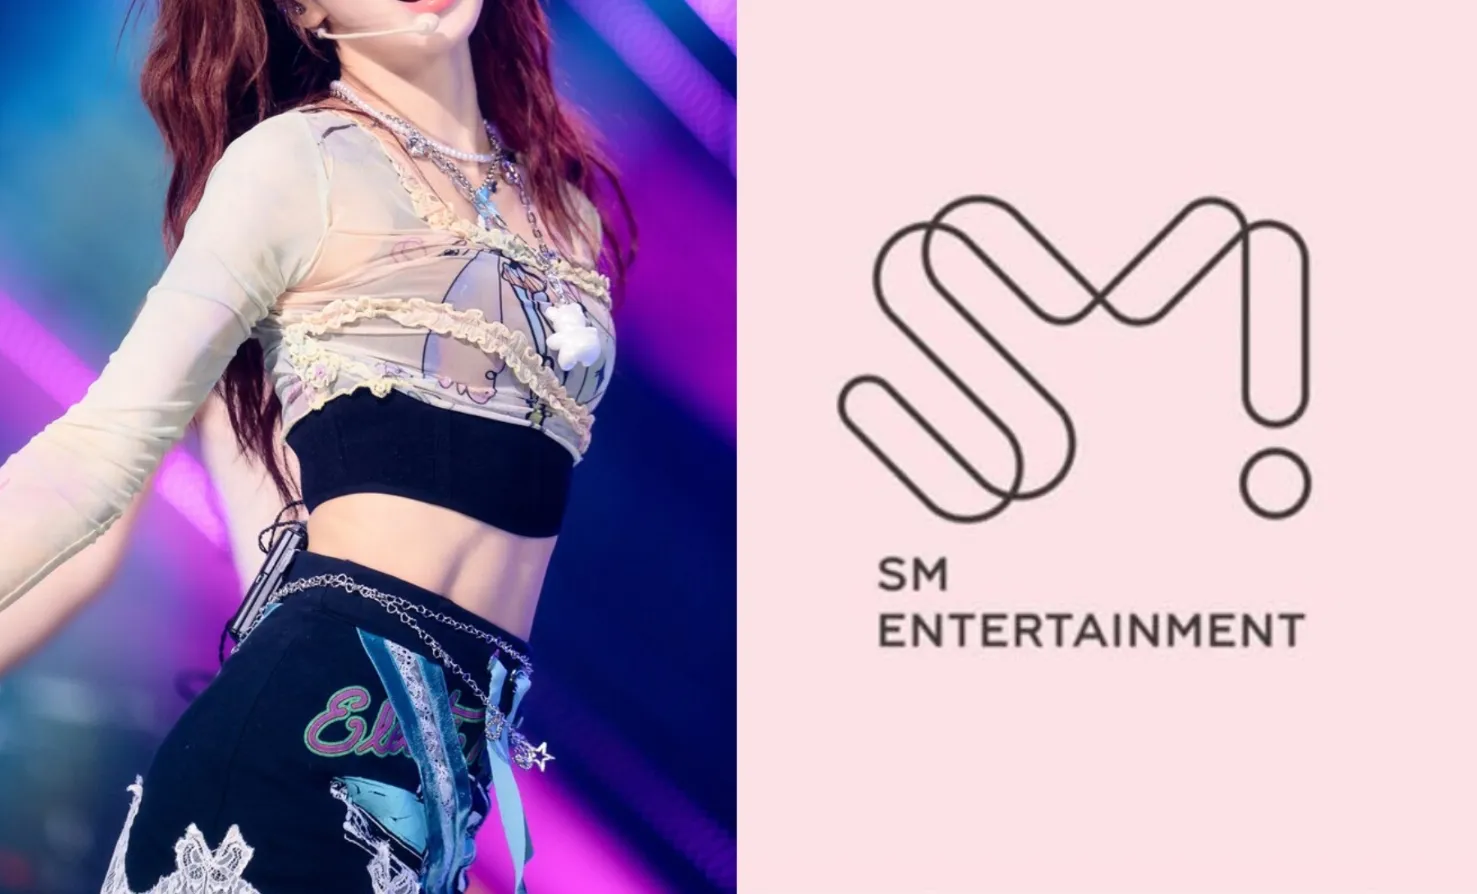 ESTA artista da SM Entertainment é considerada a favorita de todos os gerentes - quem é ela?